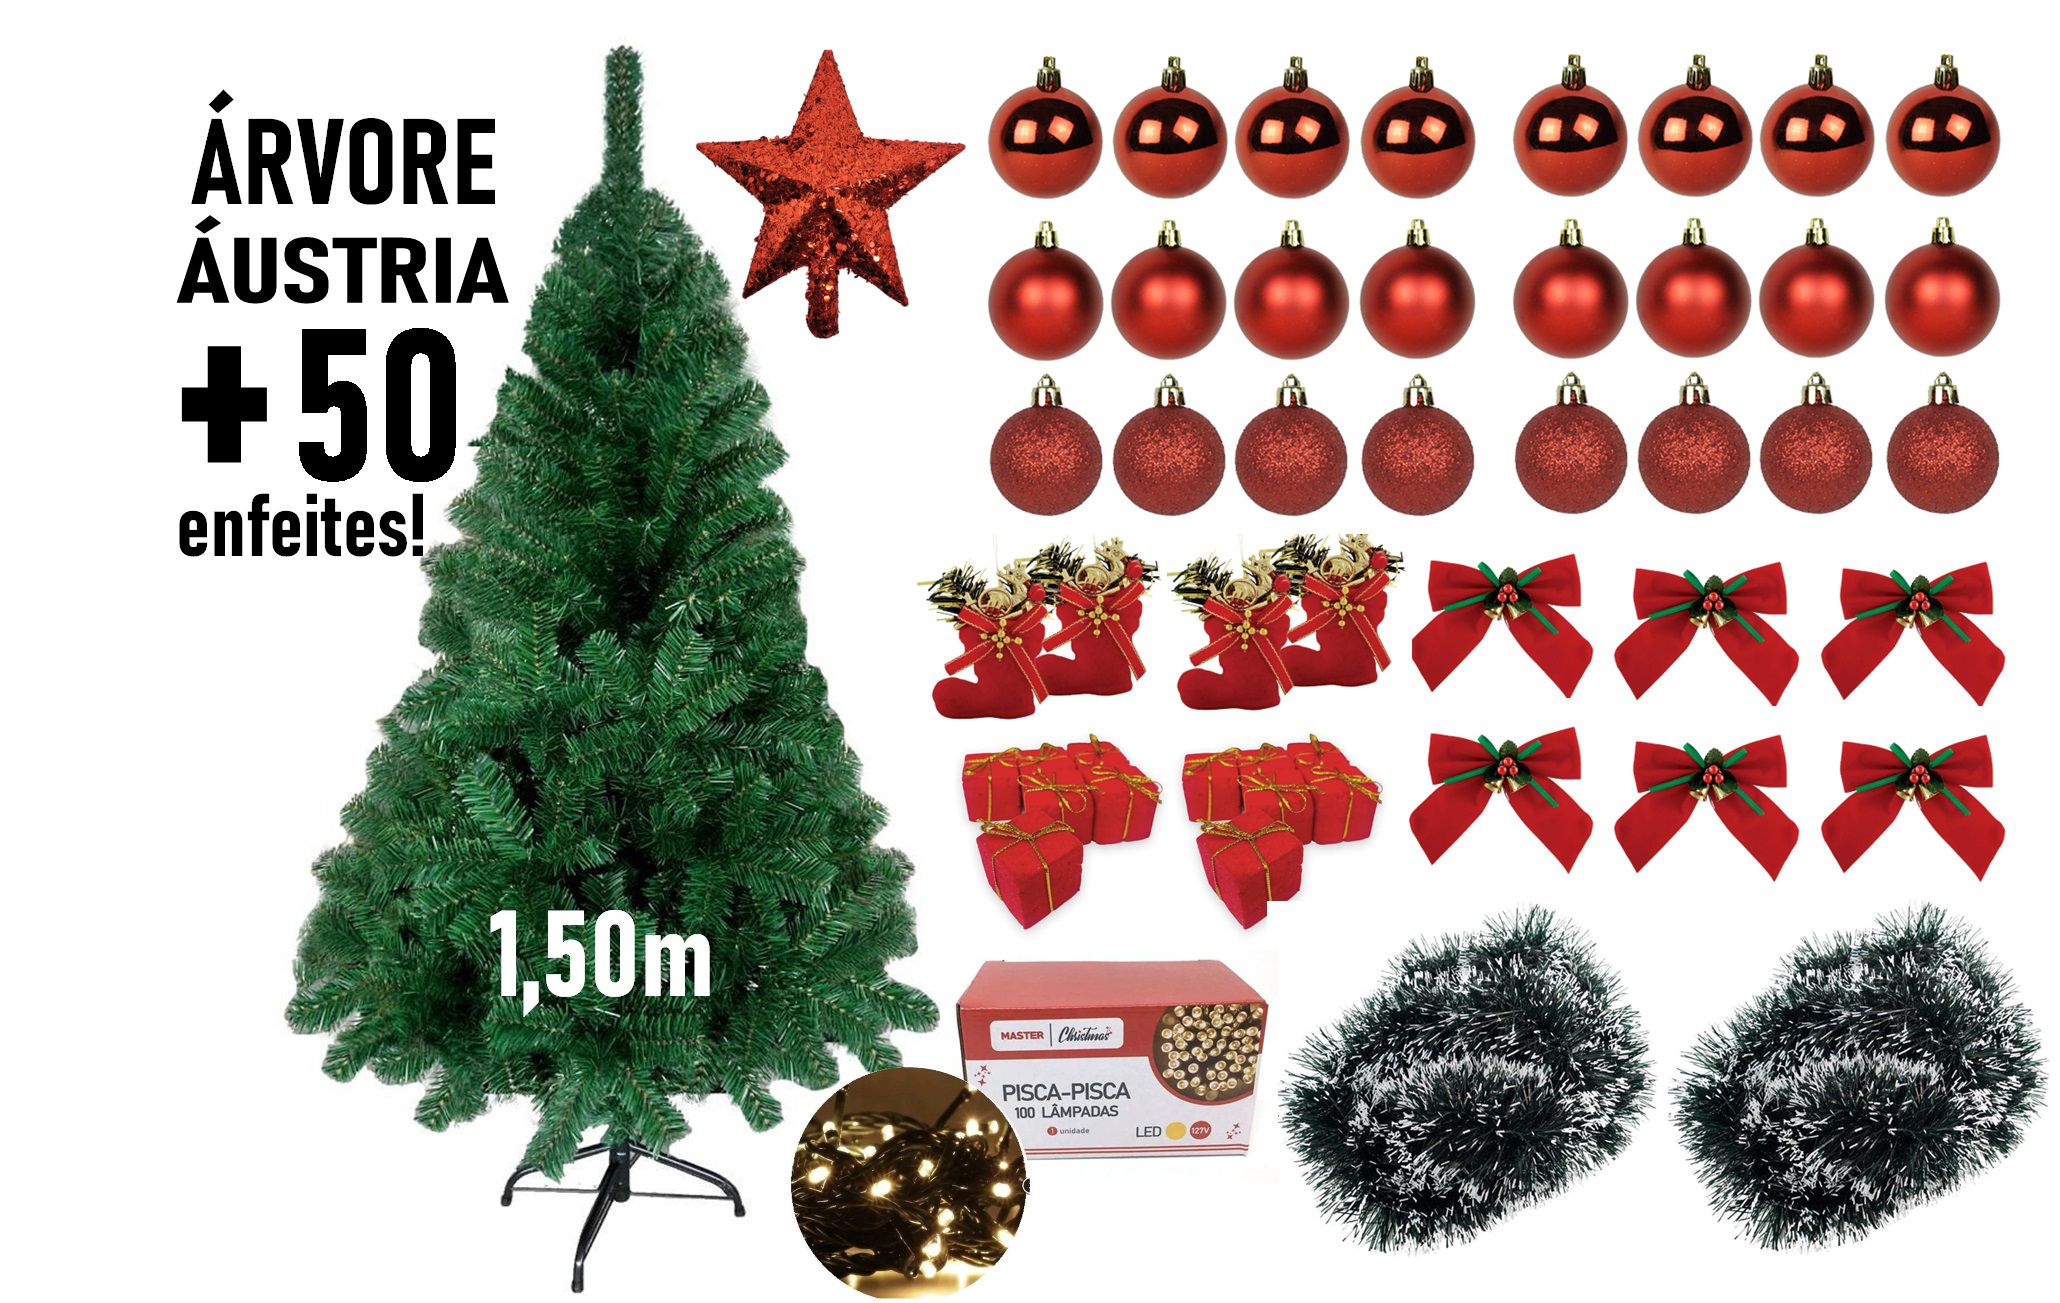 Árvore de Natal Branca 29 Galhos 1,30 Metros Decorativa - Central